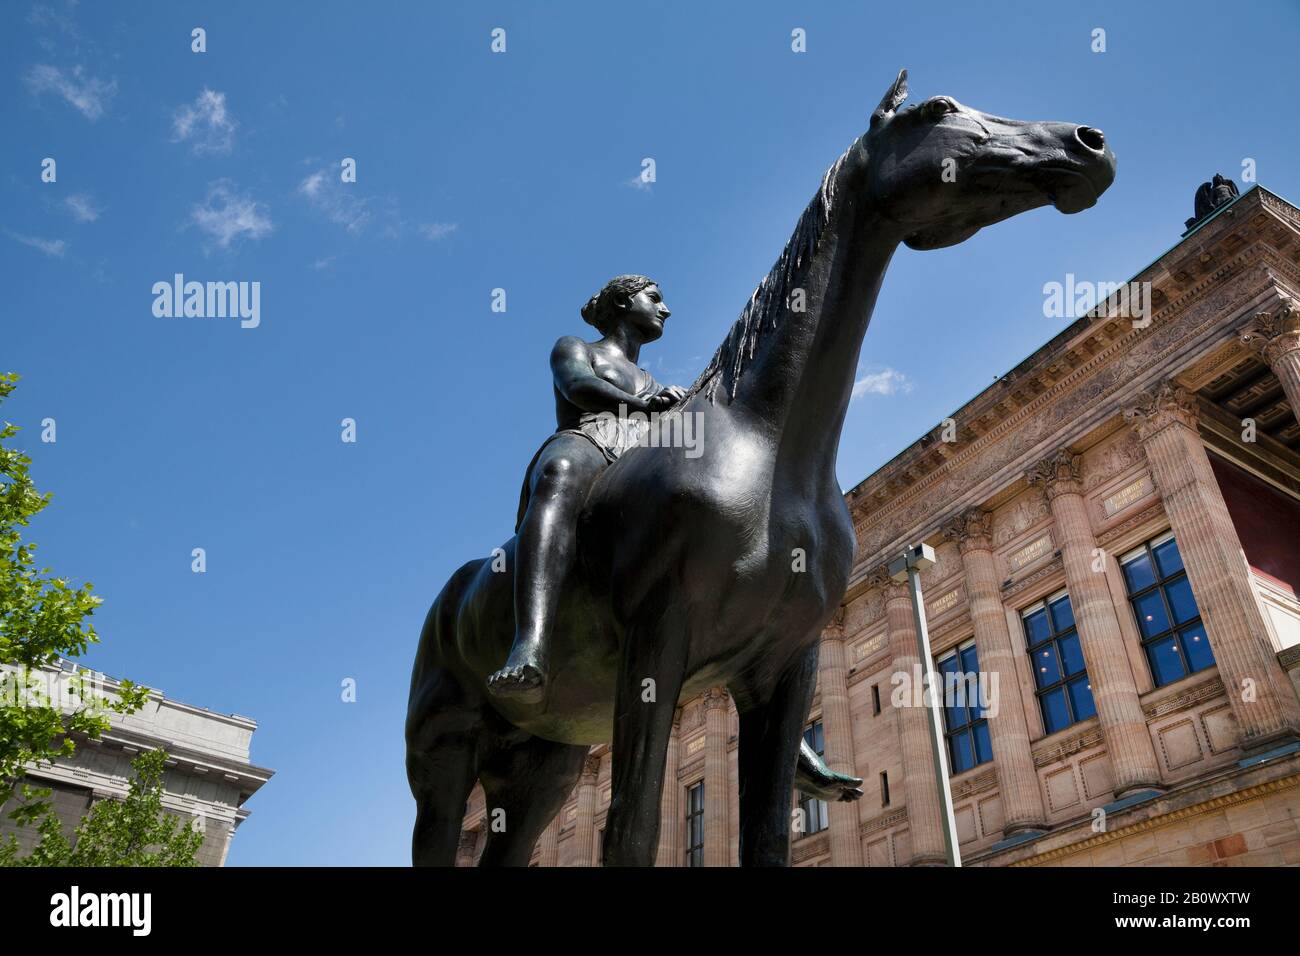 Skulptur Alte Nationalgalerie Stockfotos und -bilder Kaufen - Alamy